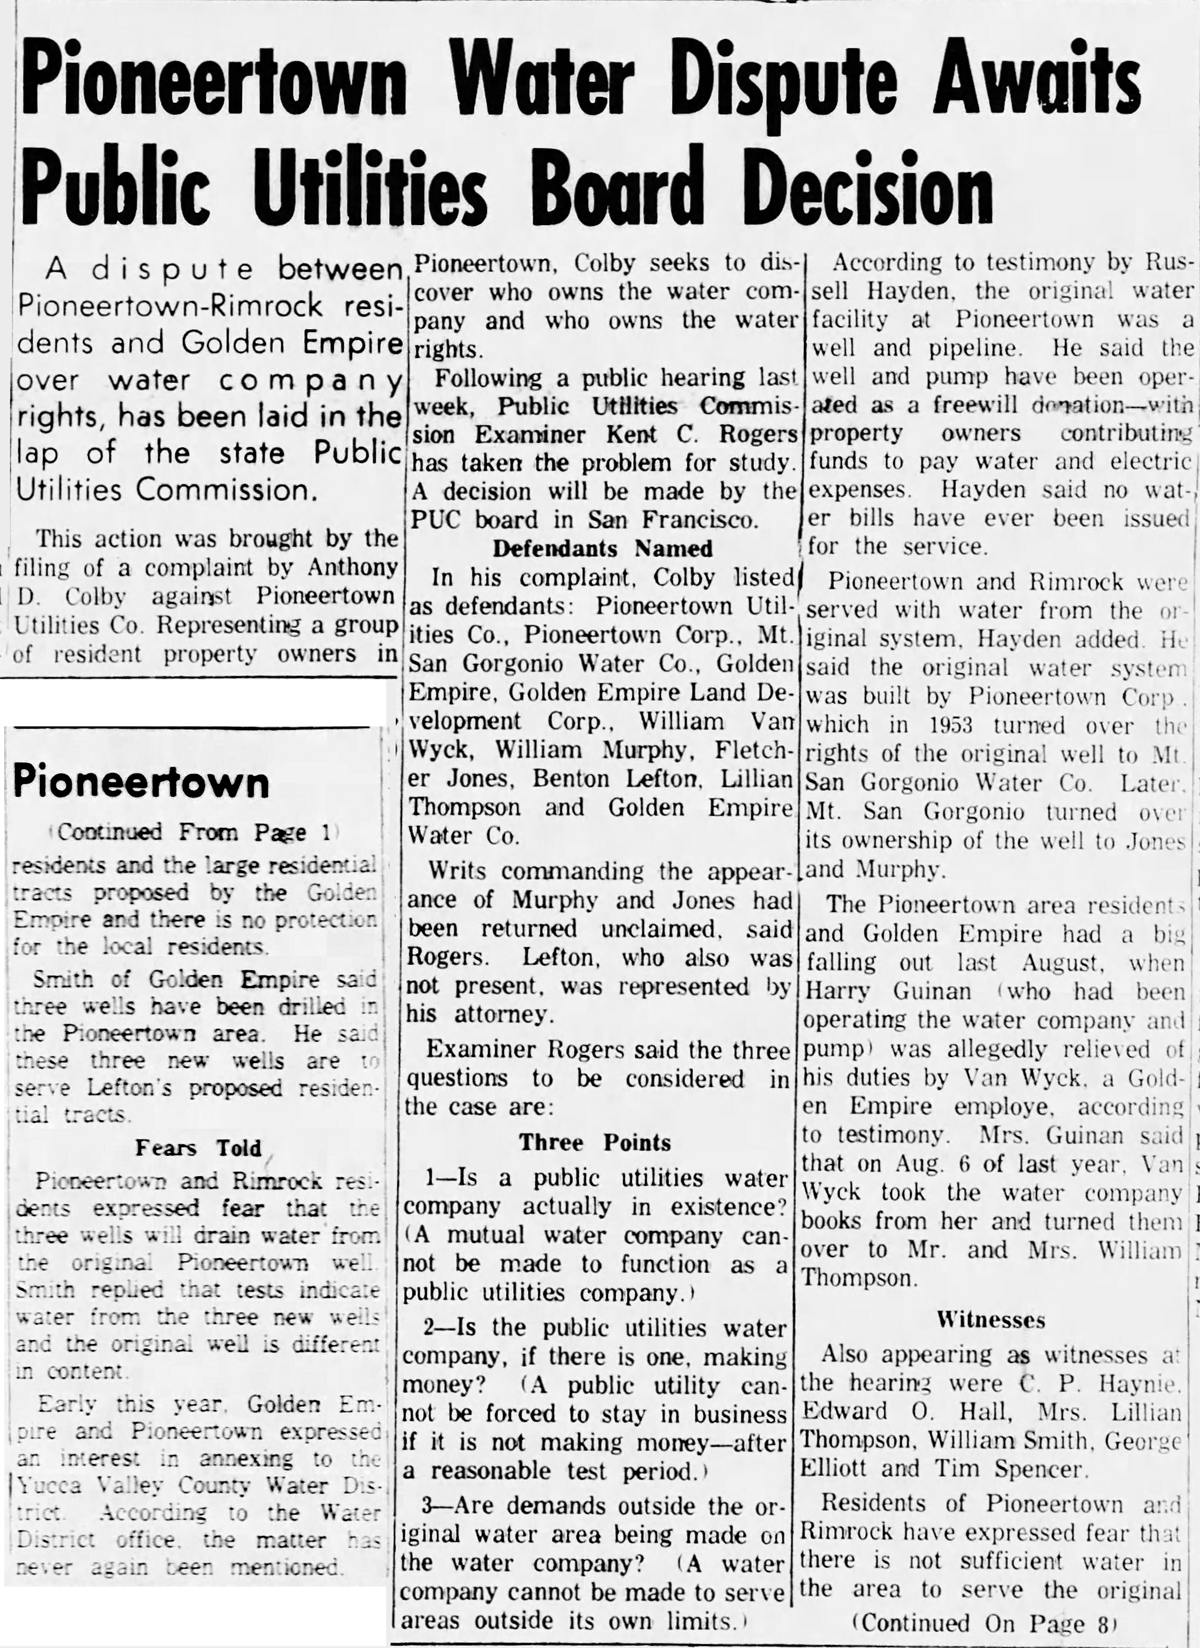 clipping of Sept. 1, 1966 Hi-desert Star article.